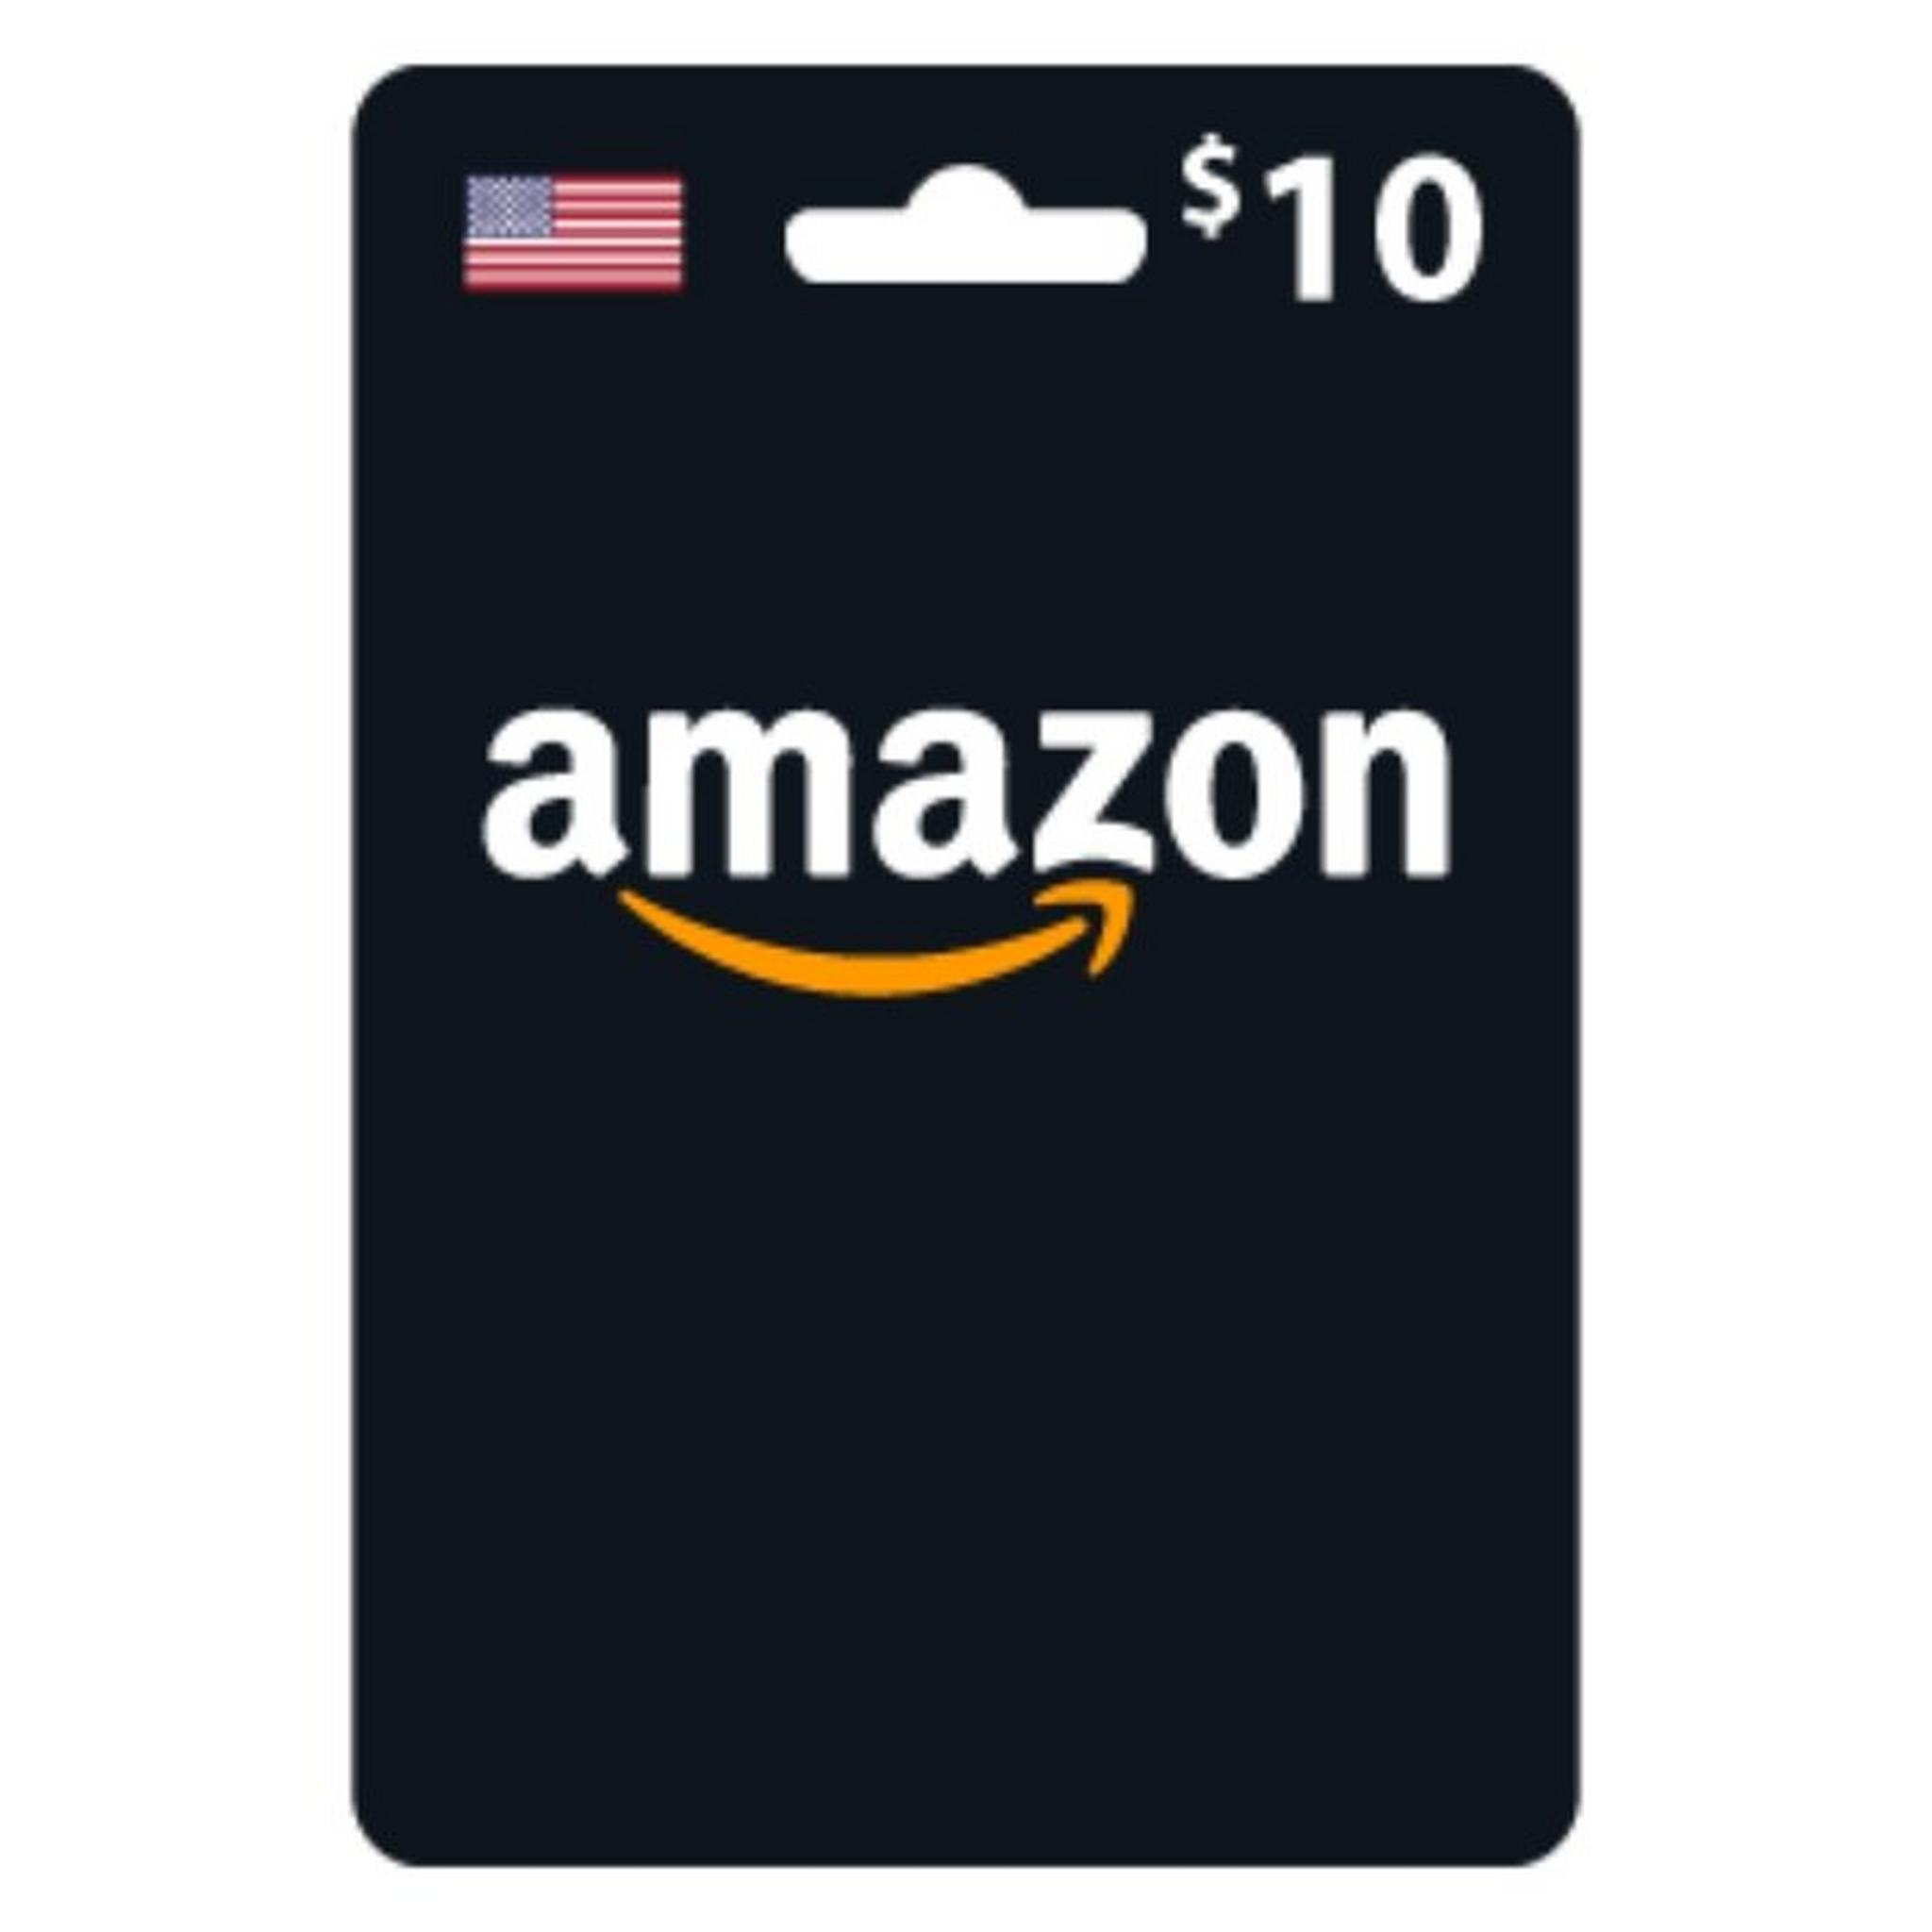 بطاقة أمازون 10 دولار (متجر أمريكي) - إرسال فوري للرمز